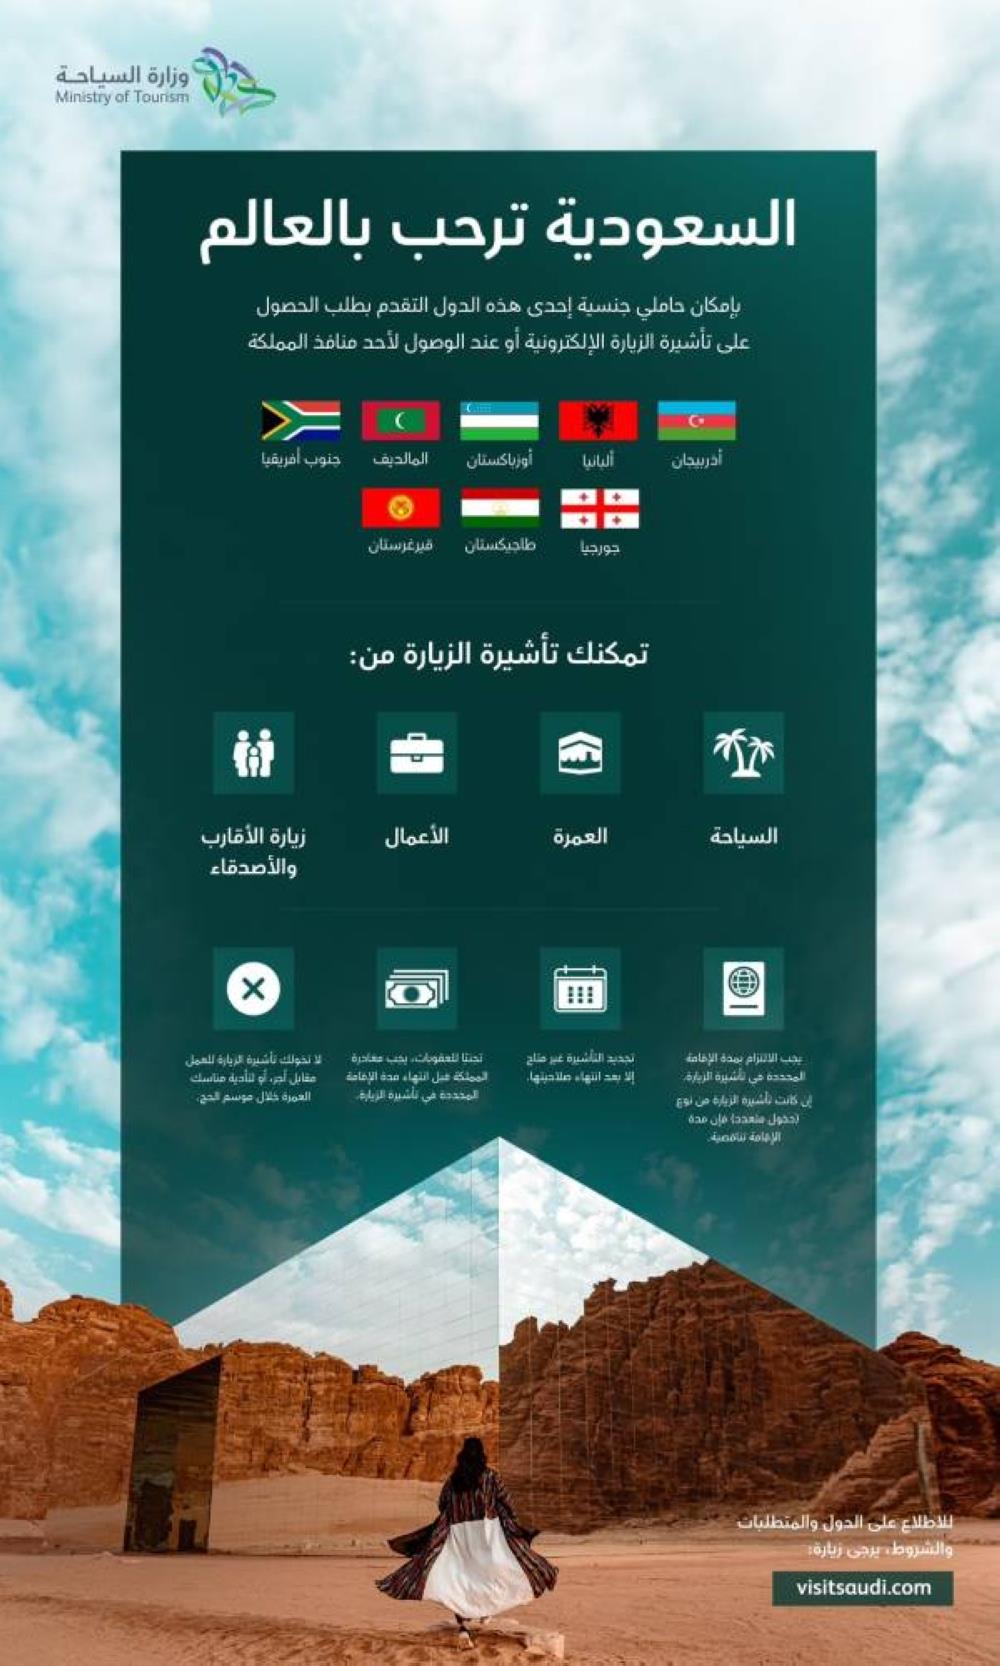 السعودية تمنح 8 دول جديدة تأشيرات الزيارة الإلكترونية